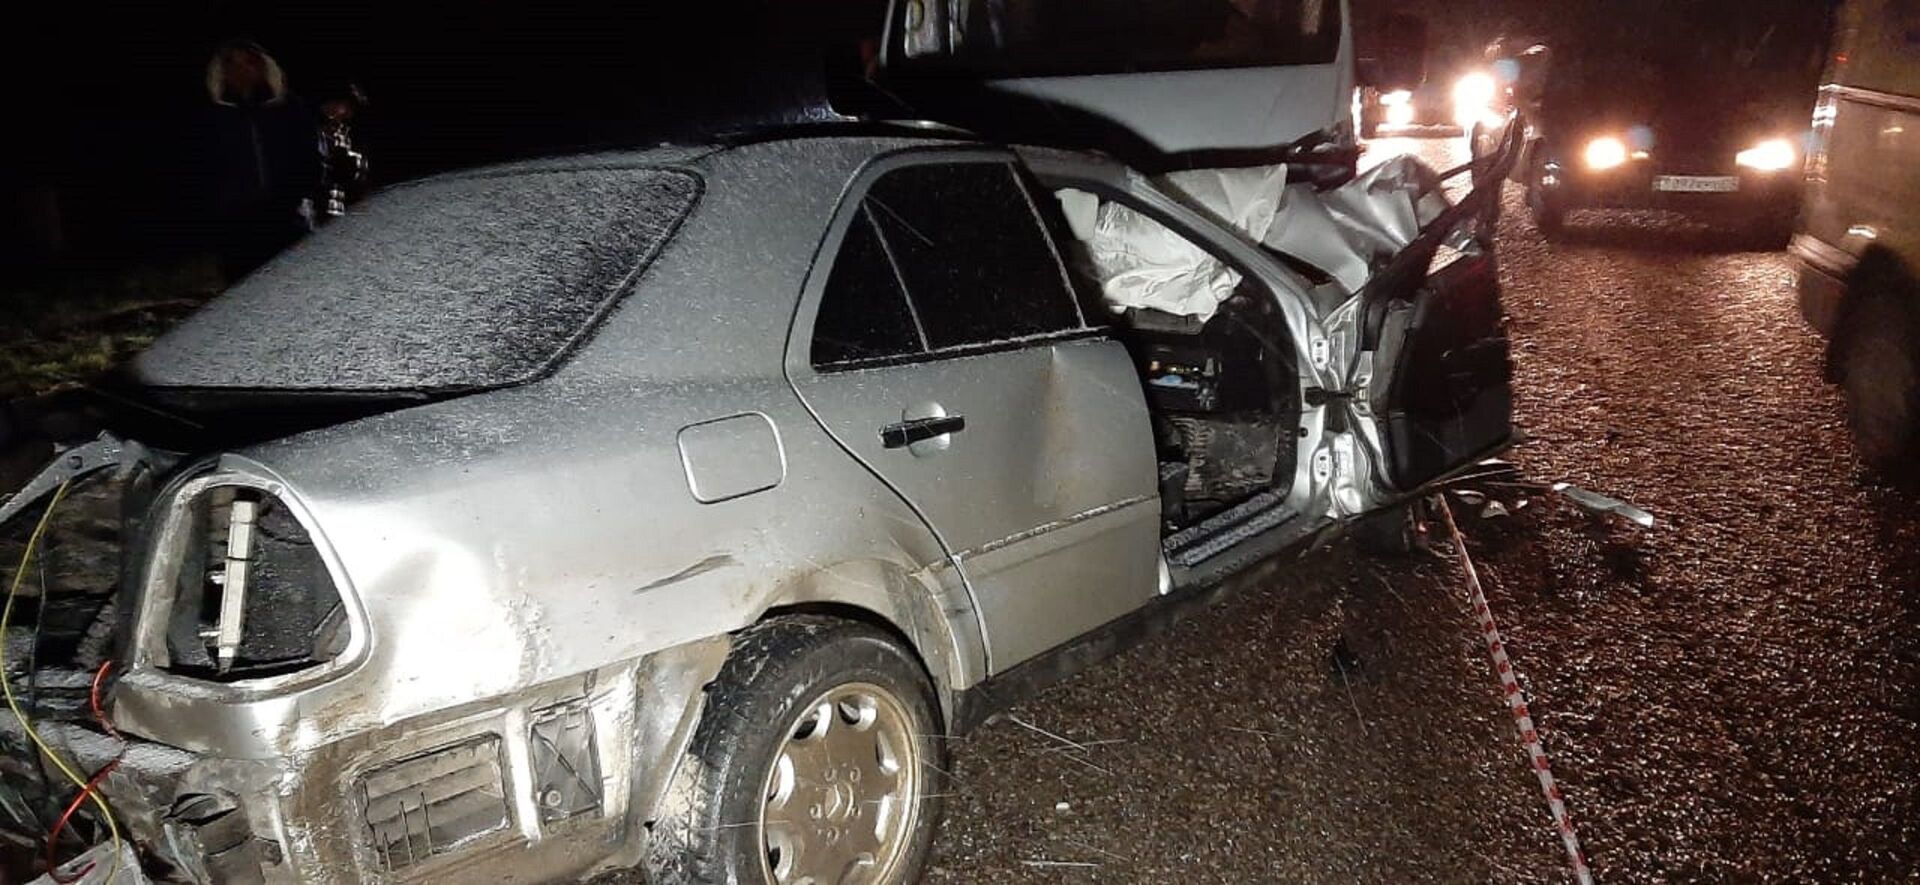 Страшное ДТП произошло в Алматинской области: погибли водители двух авто - Sputnik Казахстан, 1920, 21.04.2021